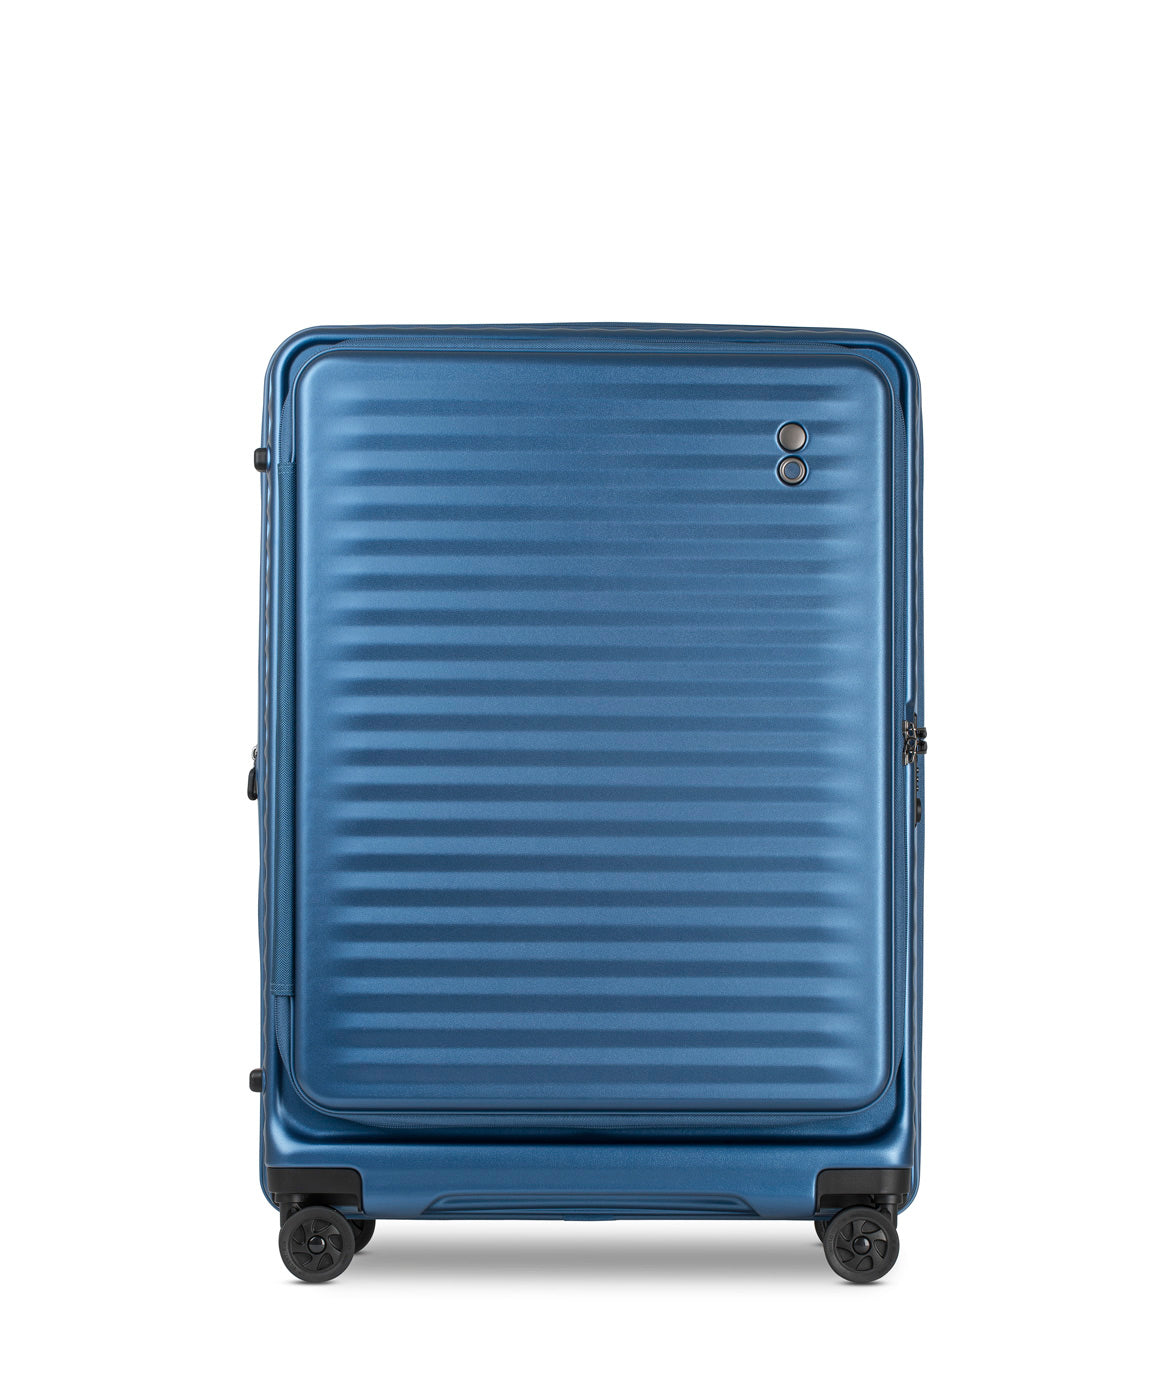 Celestra 3 piece Suitcase Set. Blue